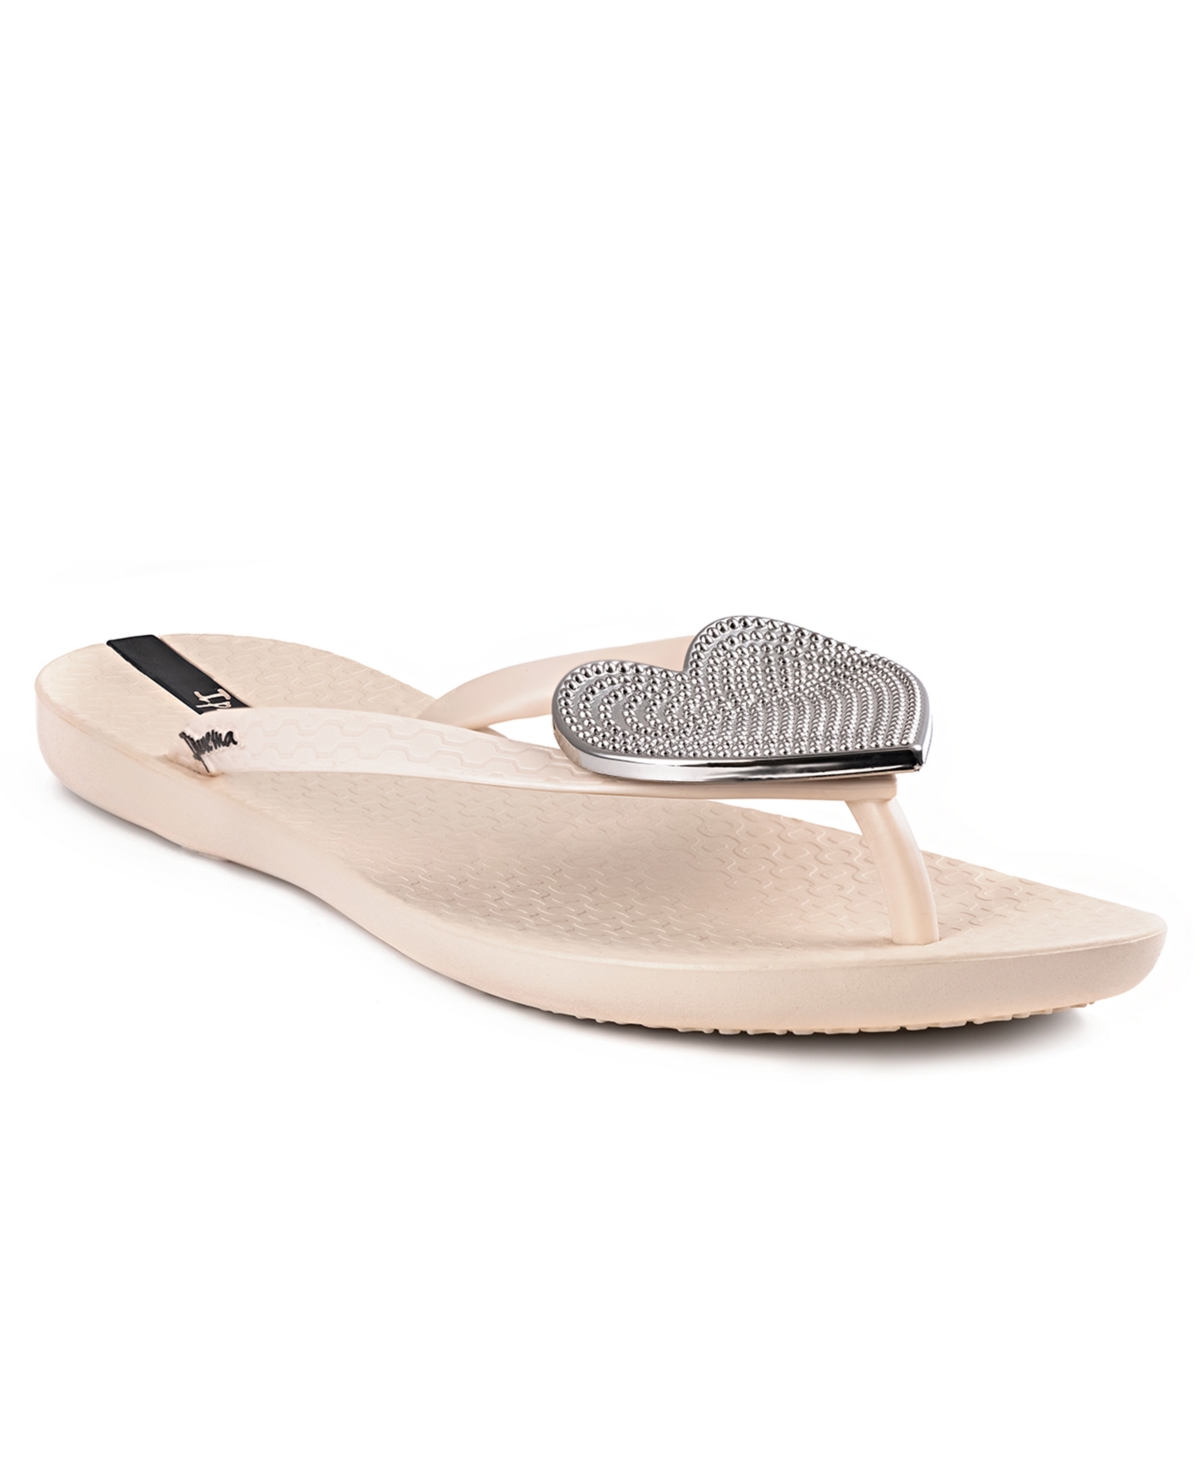 Ipanema Women's Wave Heart Sparkle Flip-flop Sandals Women's Shoes